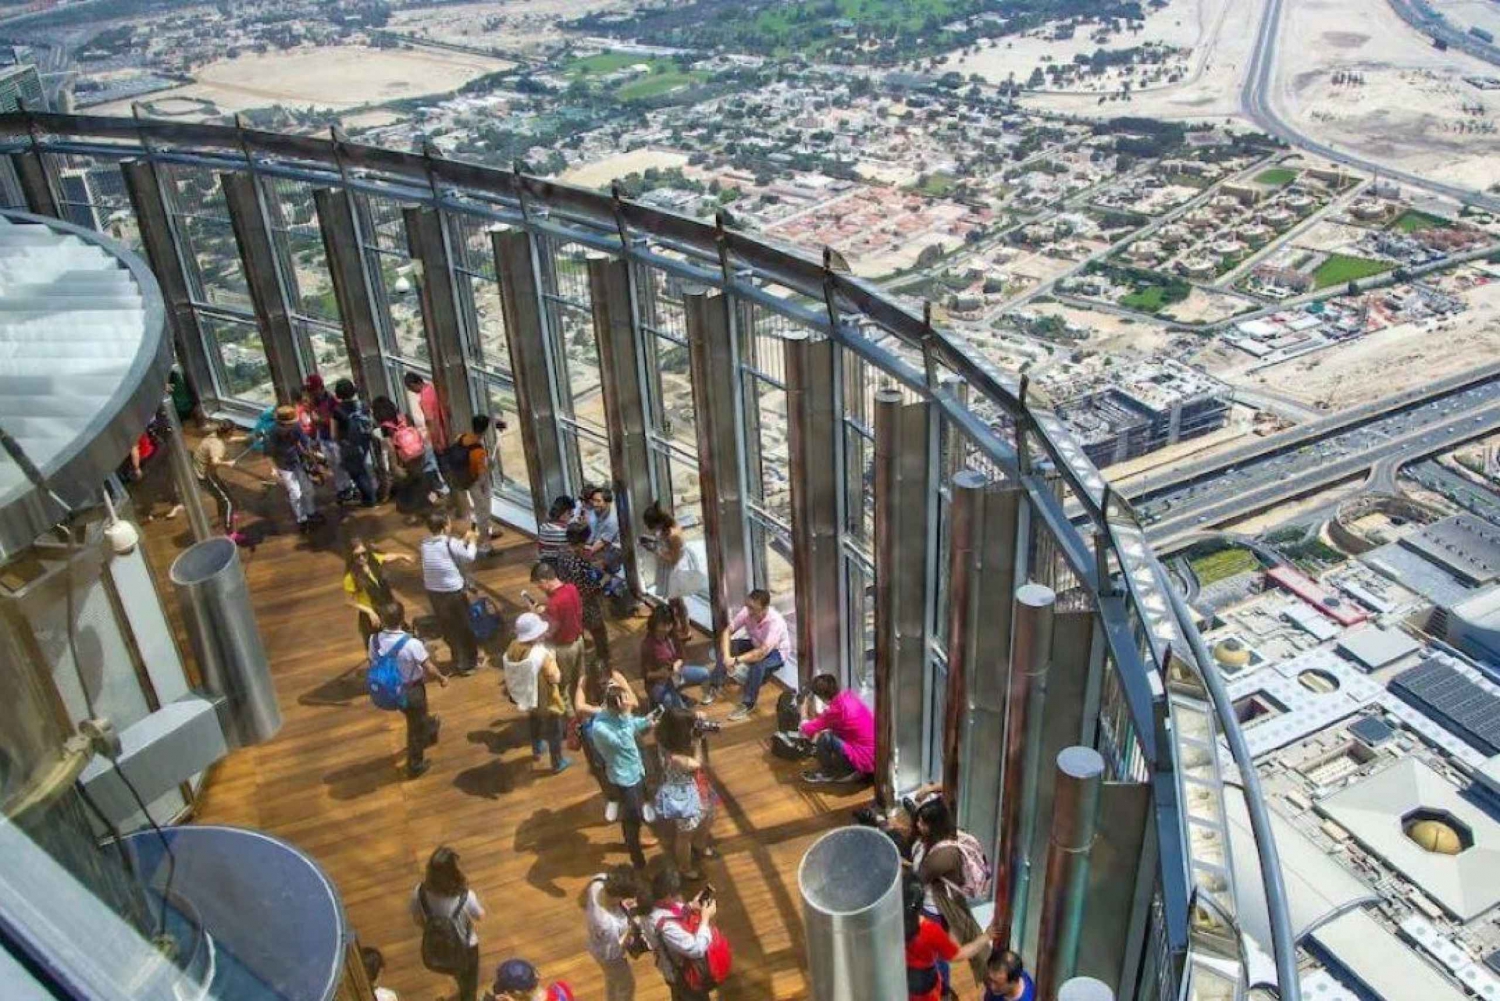 Ingresso in cima al Burj Khalifa con tè pomeridiano all'Al Bayt